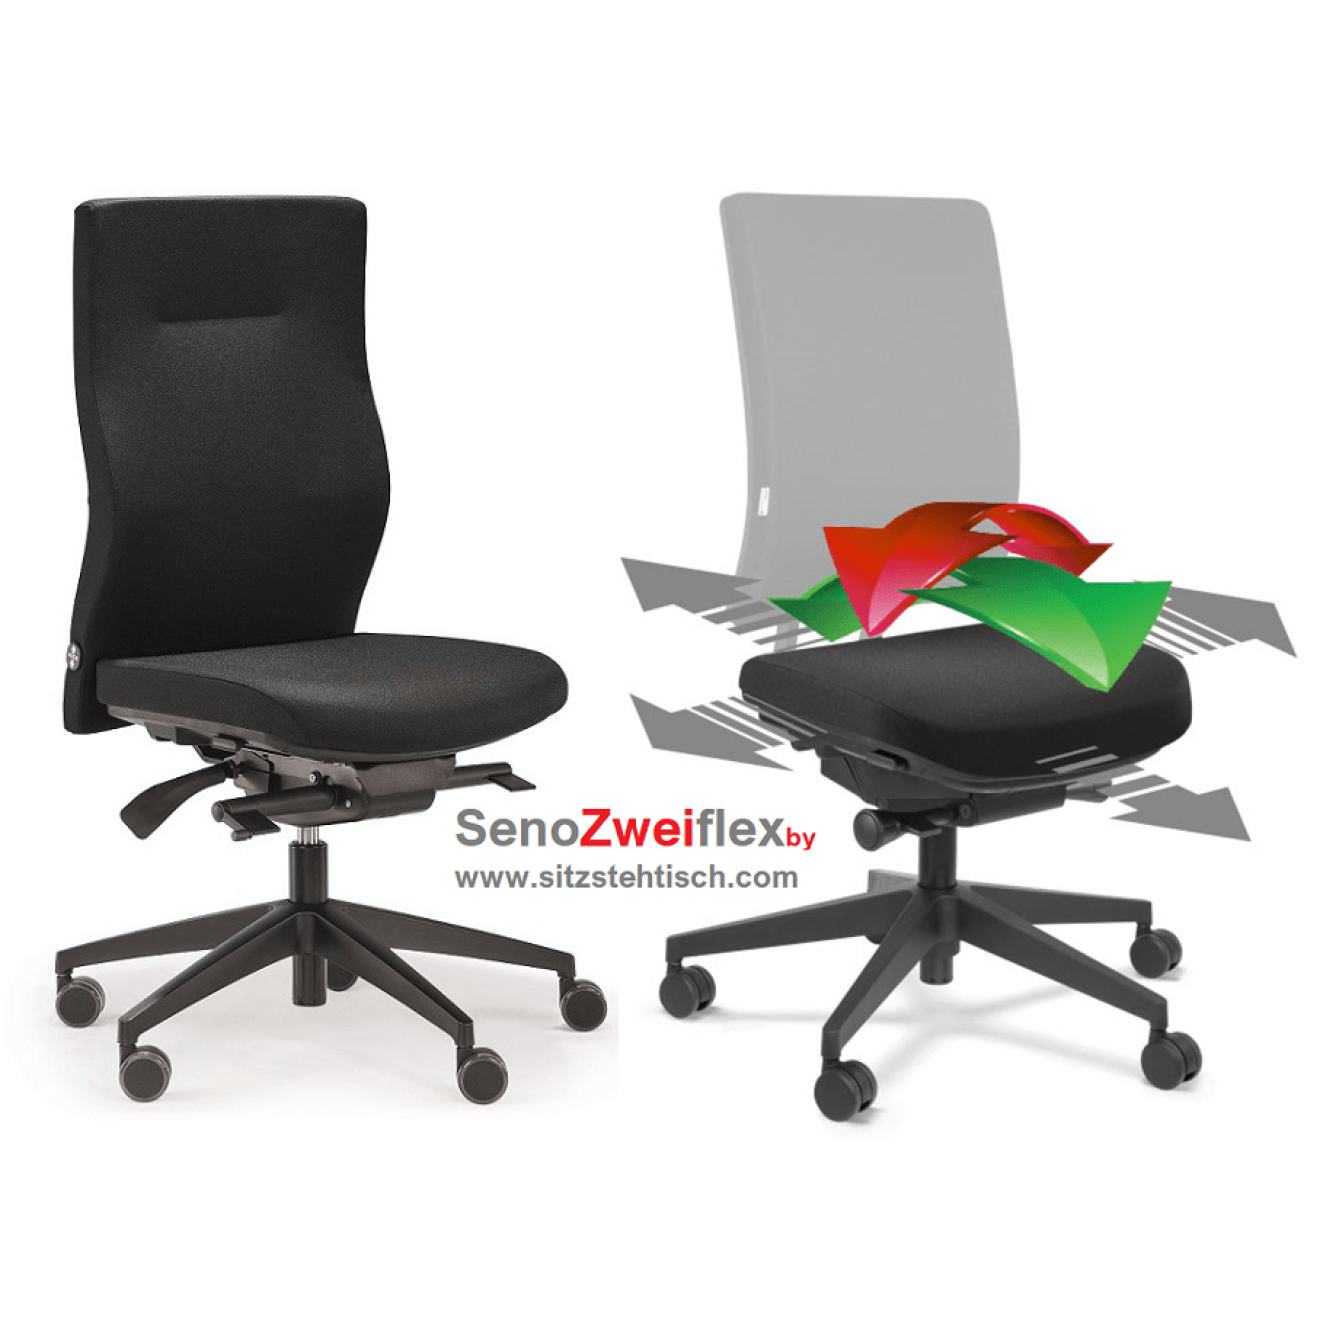 Bürostuhl Seno 2 Flex mit bewegliche Sitzfläche - 5 Jahre Garantie - Original Steifensand